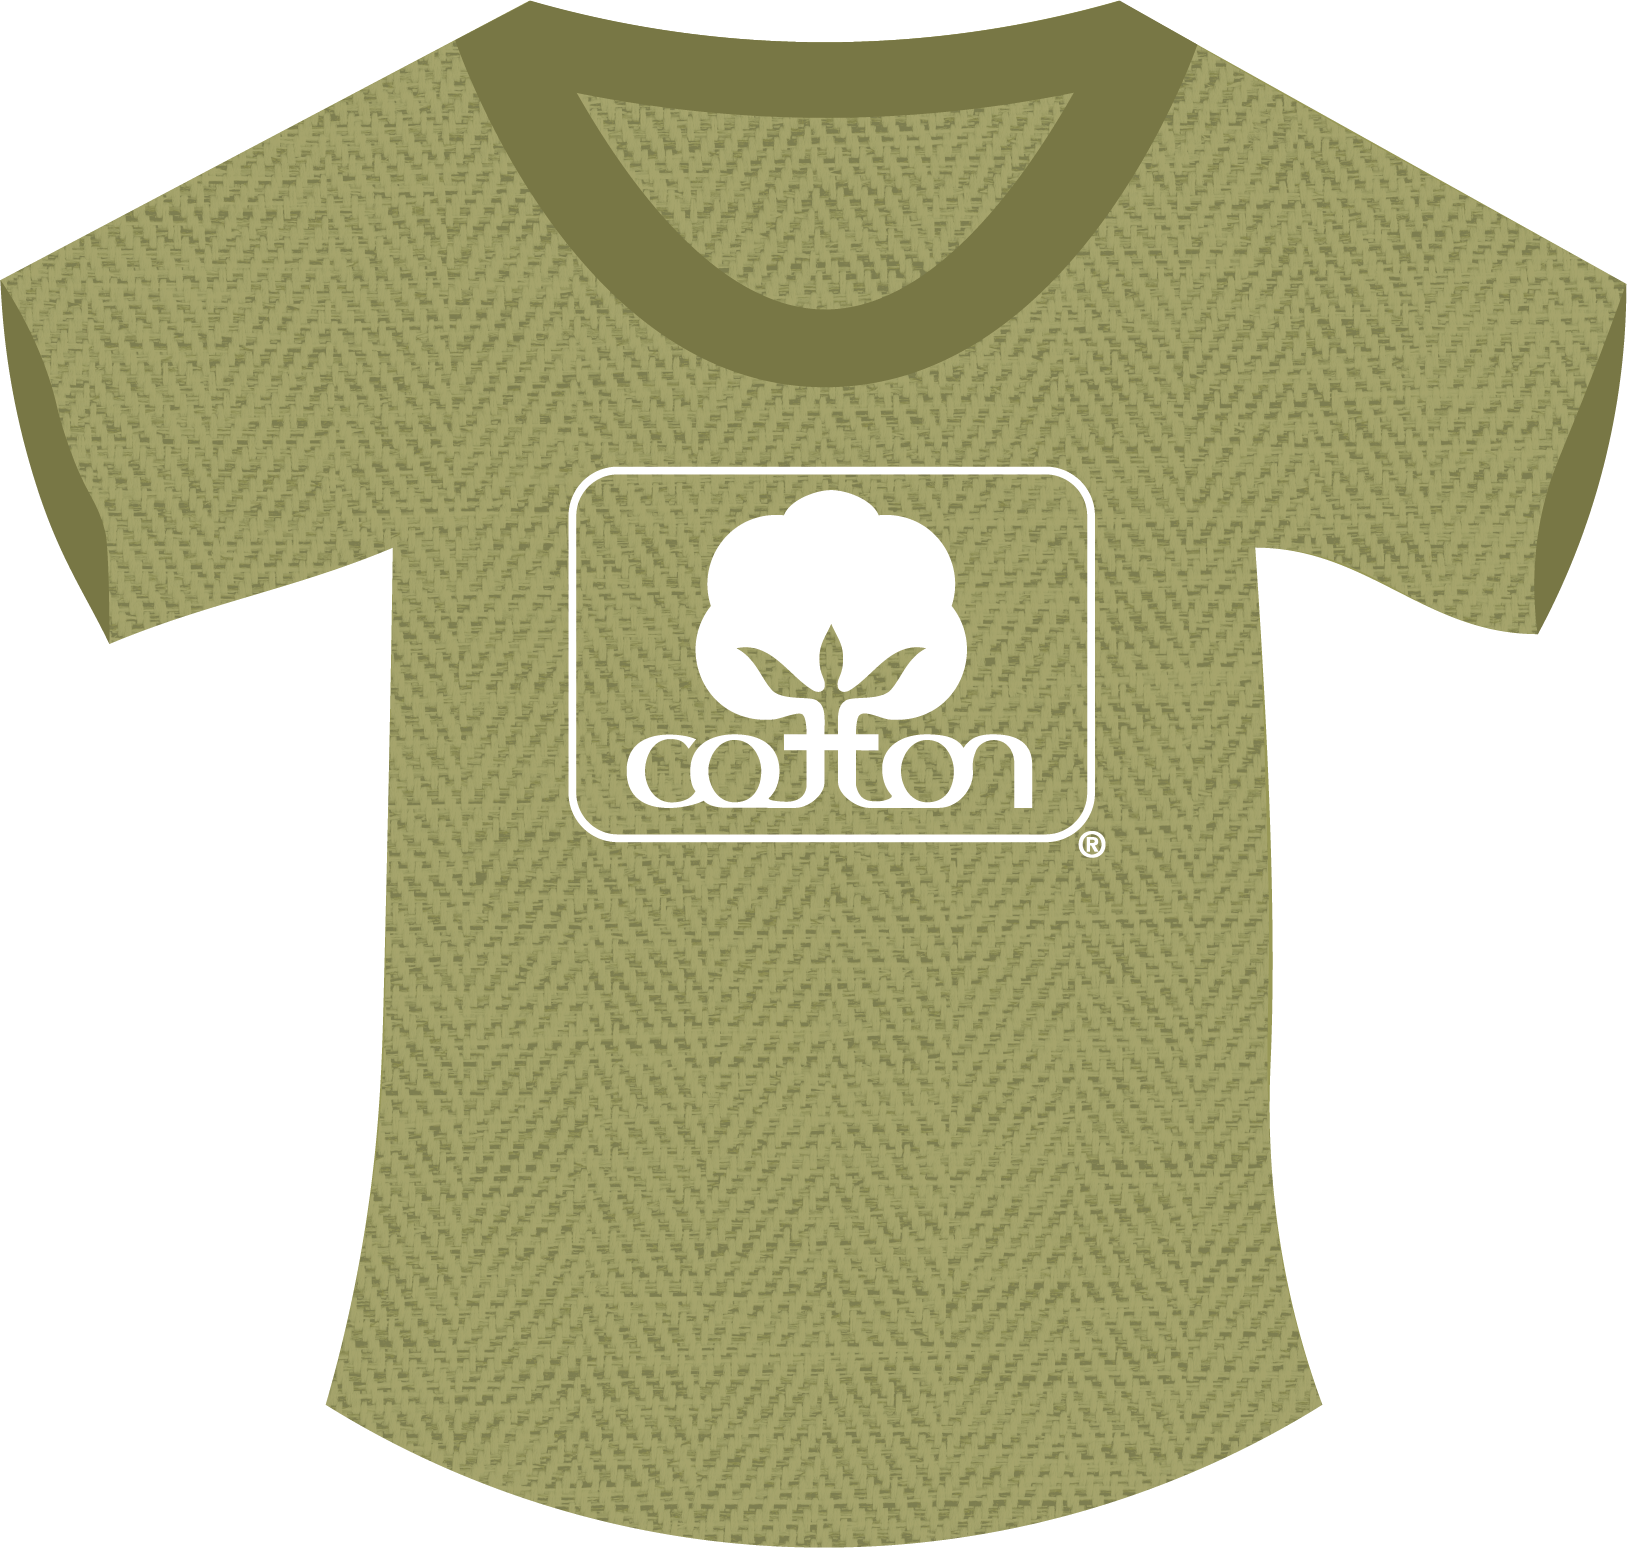 Cotton T